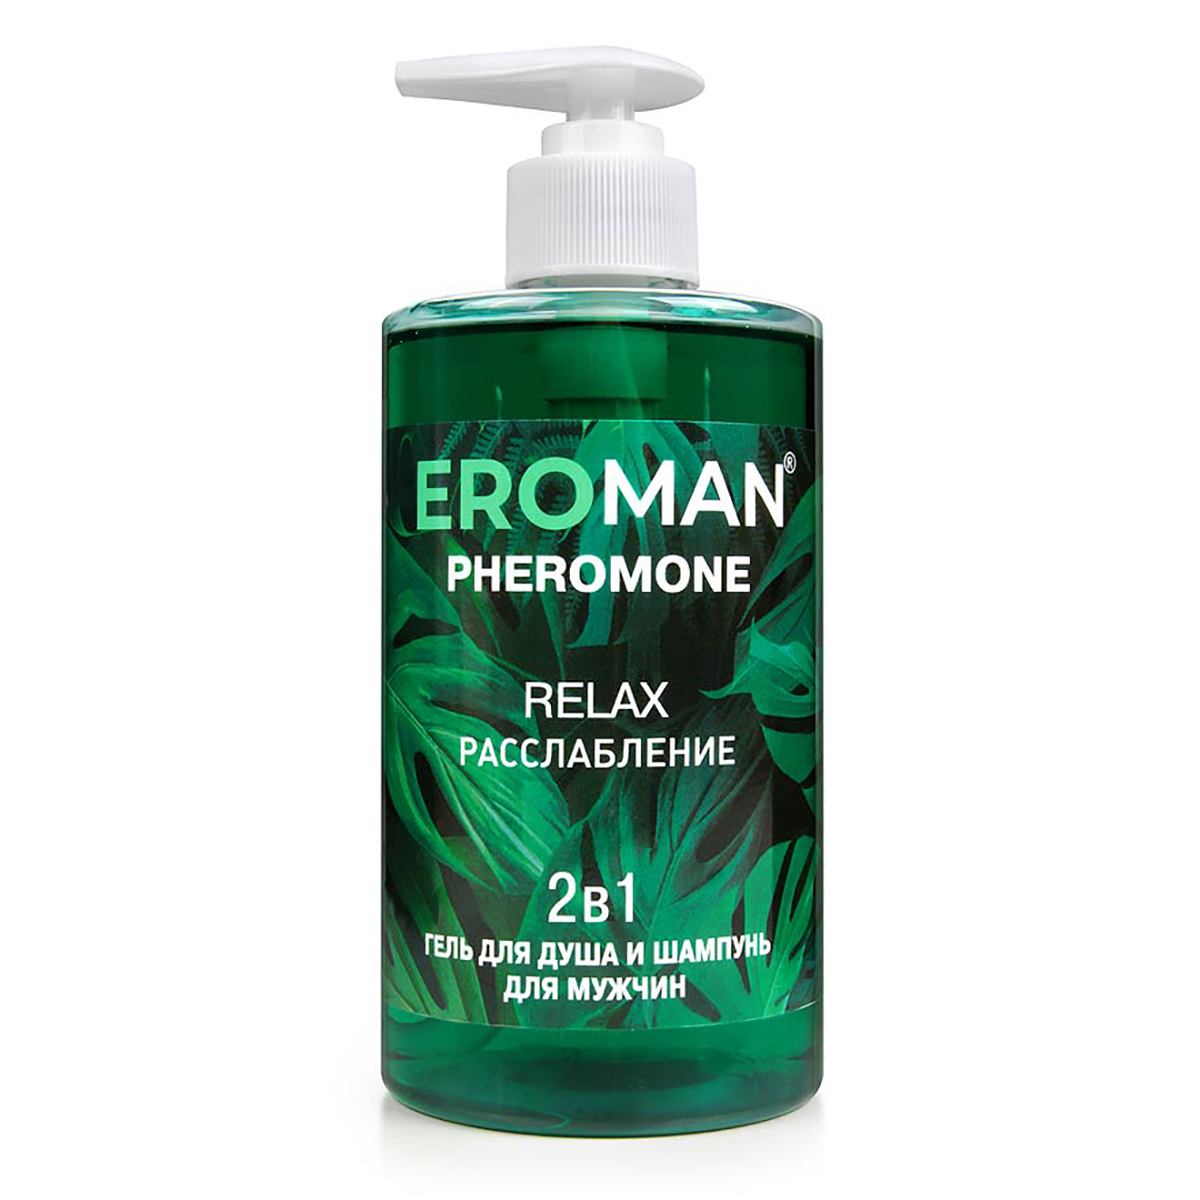 Биоритм Eroman Relax - Гель для душа и шампунь с феромонами, 430 мл